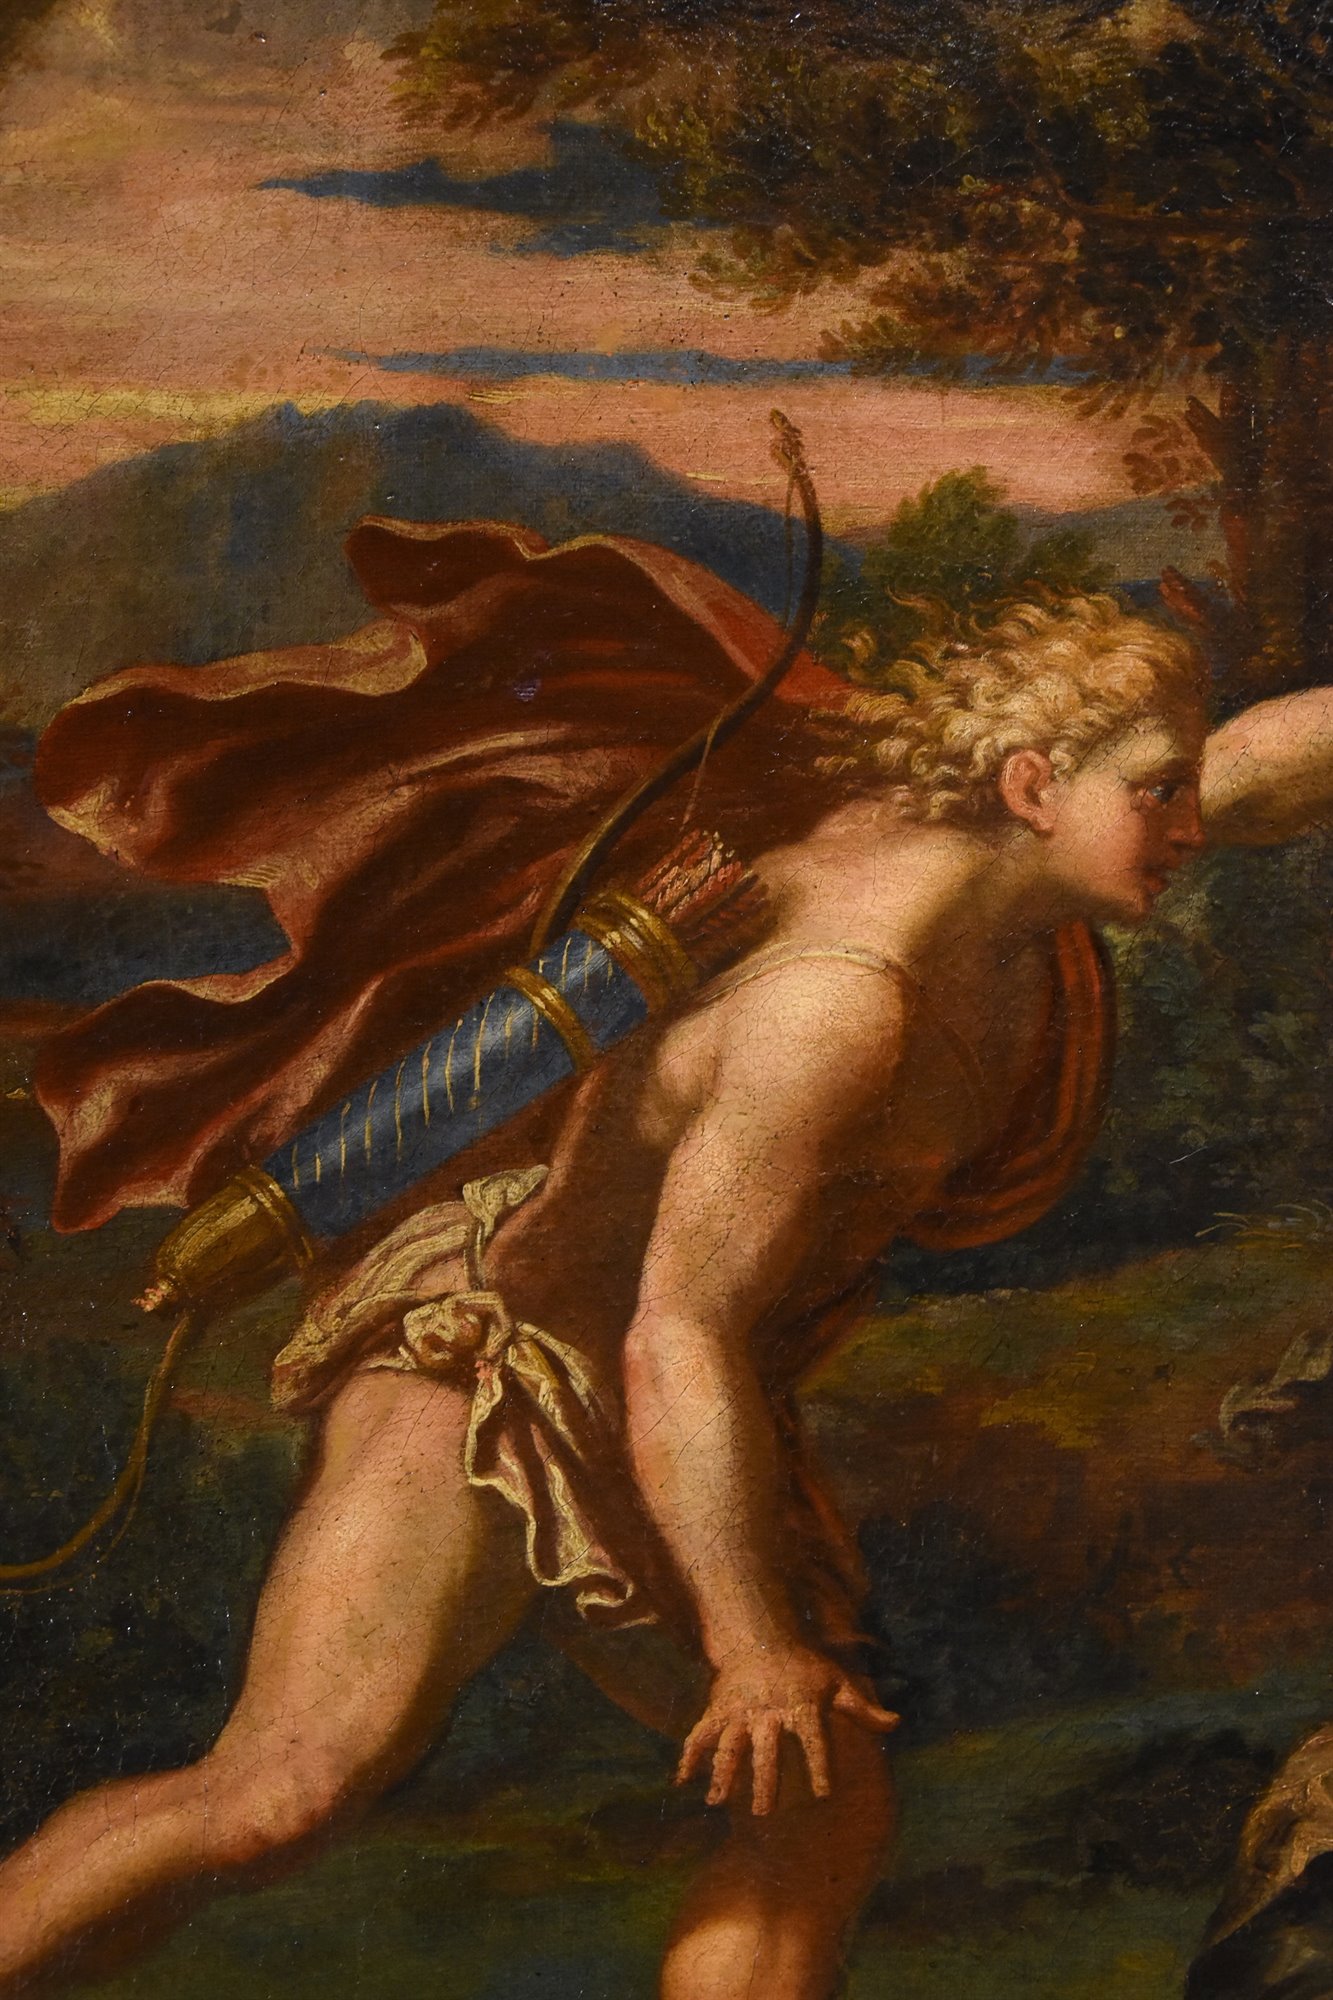 Il mito di Apollo e Dafne